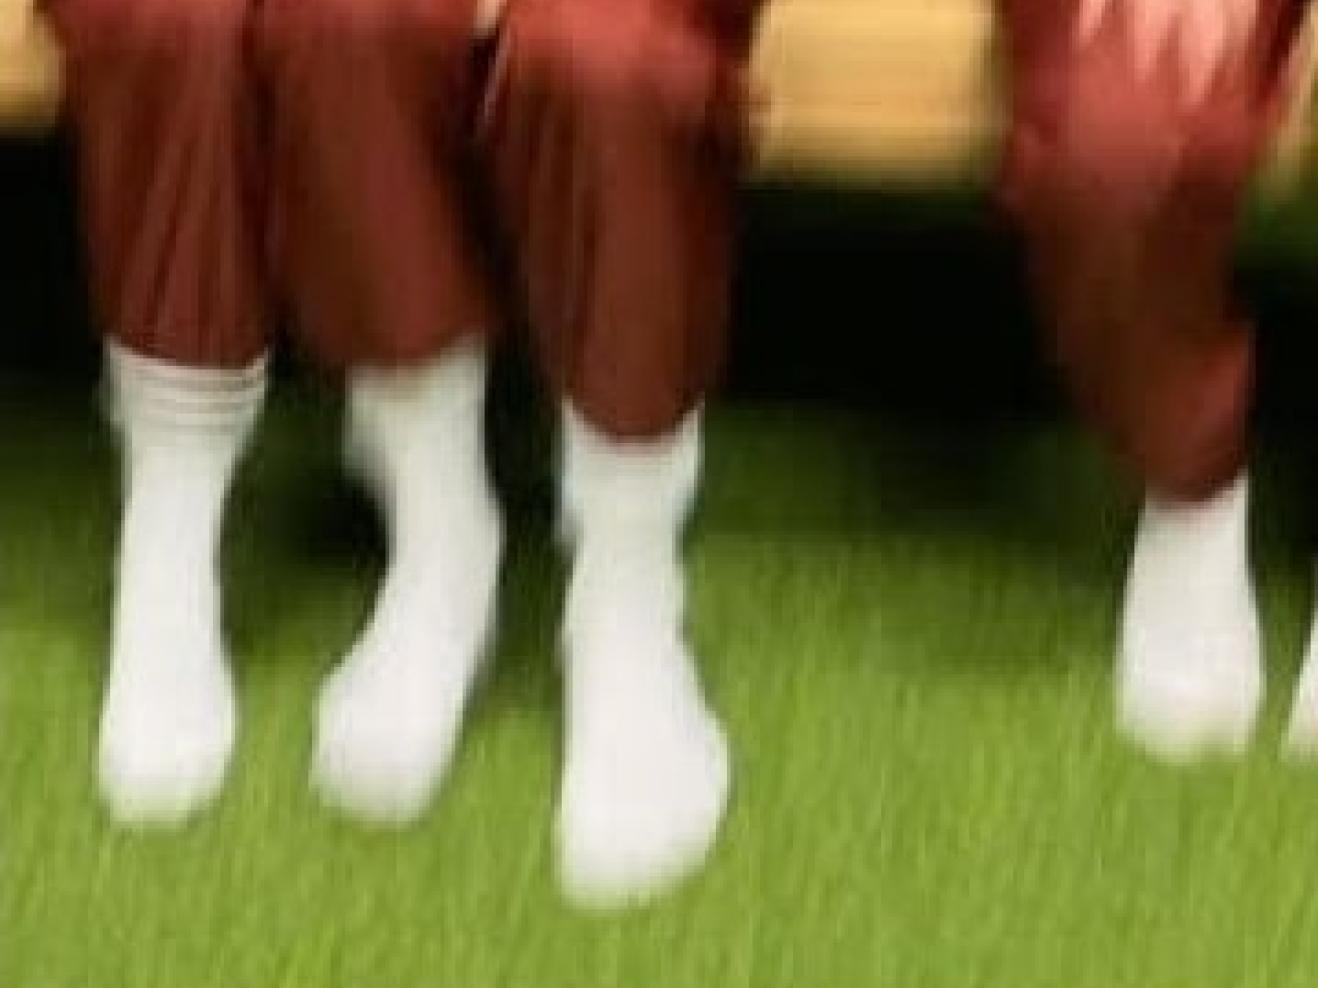 Unscharfer Blick auf drei Personen, die auf einer Holzbank sitzen und von denen nur die Beine und Füsse zu sehen sind und die rote Hosen und weisse Socken tragen.